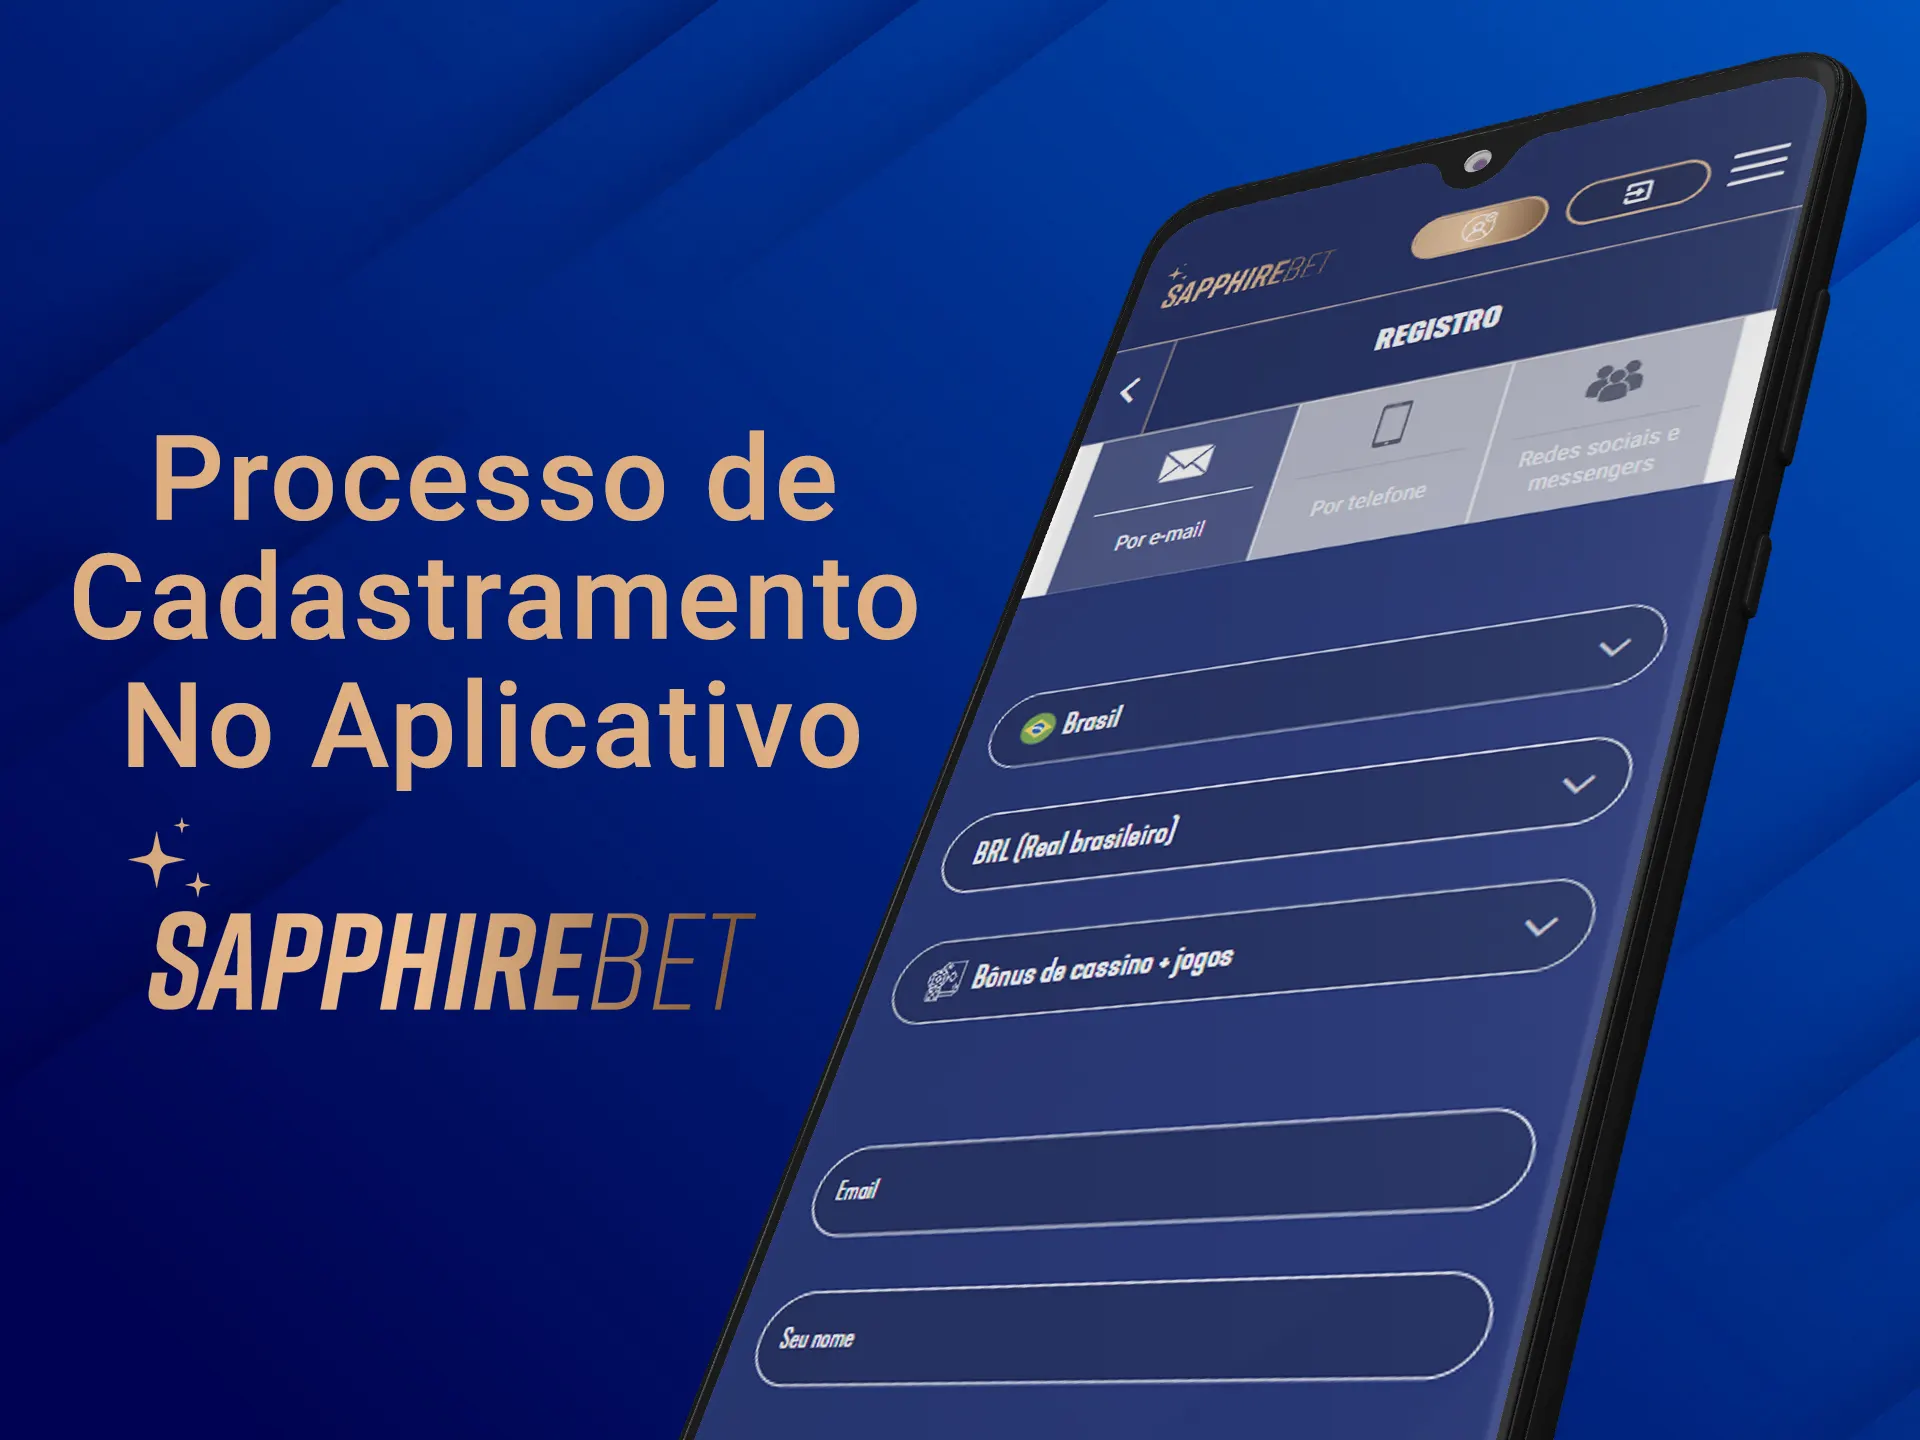 Crie uma nova conta no aplicativo Sapphirebet.